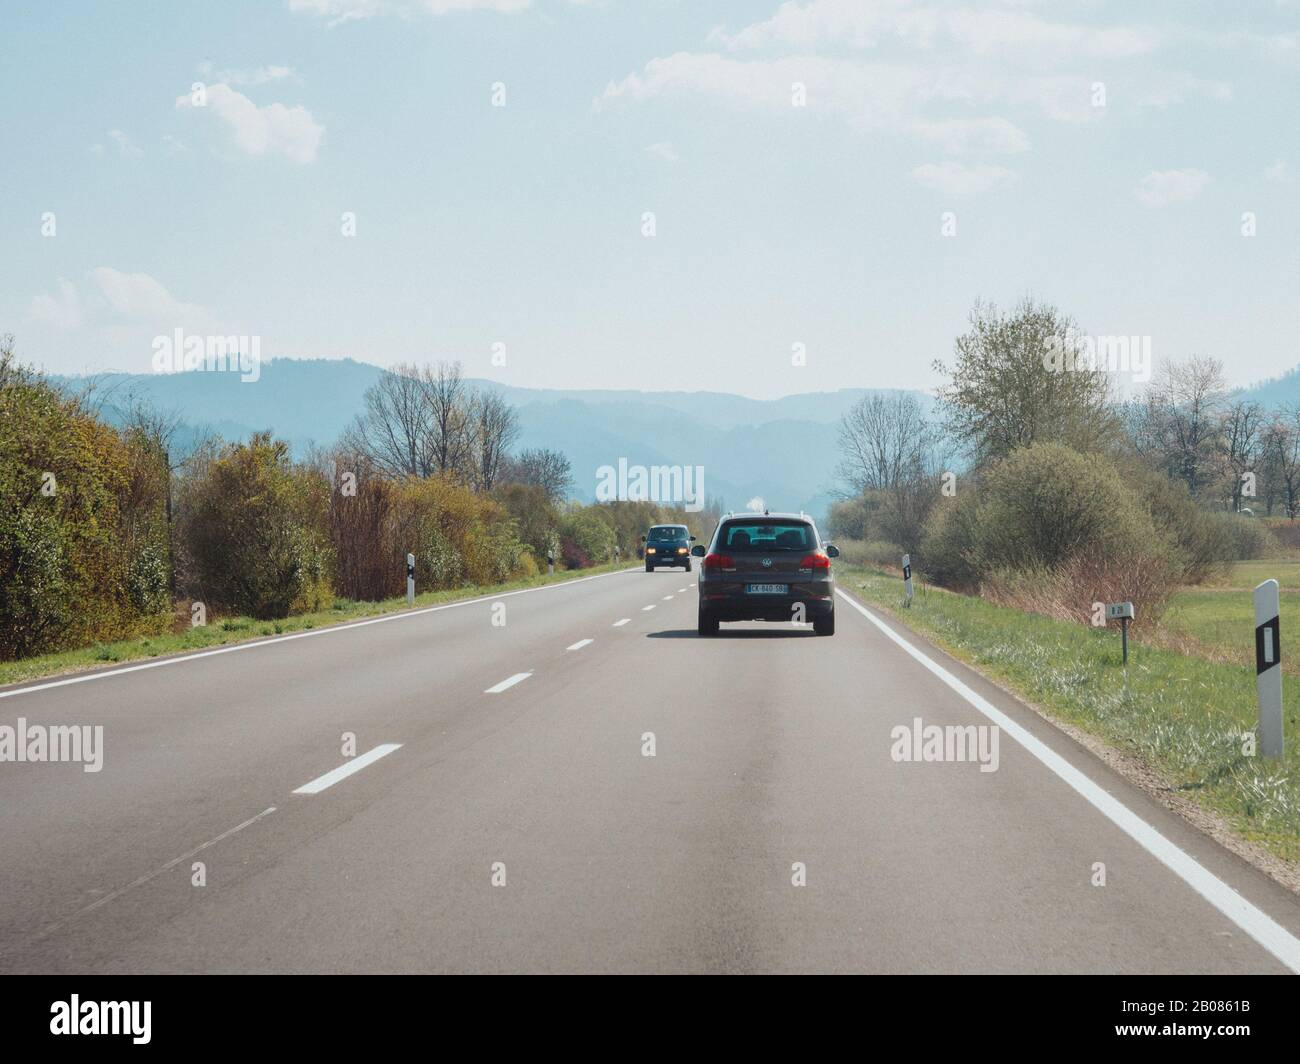 Allemagne - 31 mars 2019: Vue arrière du 4x4 Volkswagen Tiguan marron conduisant rapidement sur la route rurale avec des montagnes de forêt noire en arrière-plan couvert de brouillard Banque D'Images